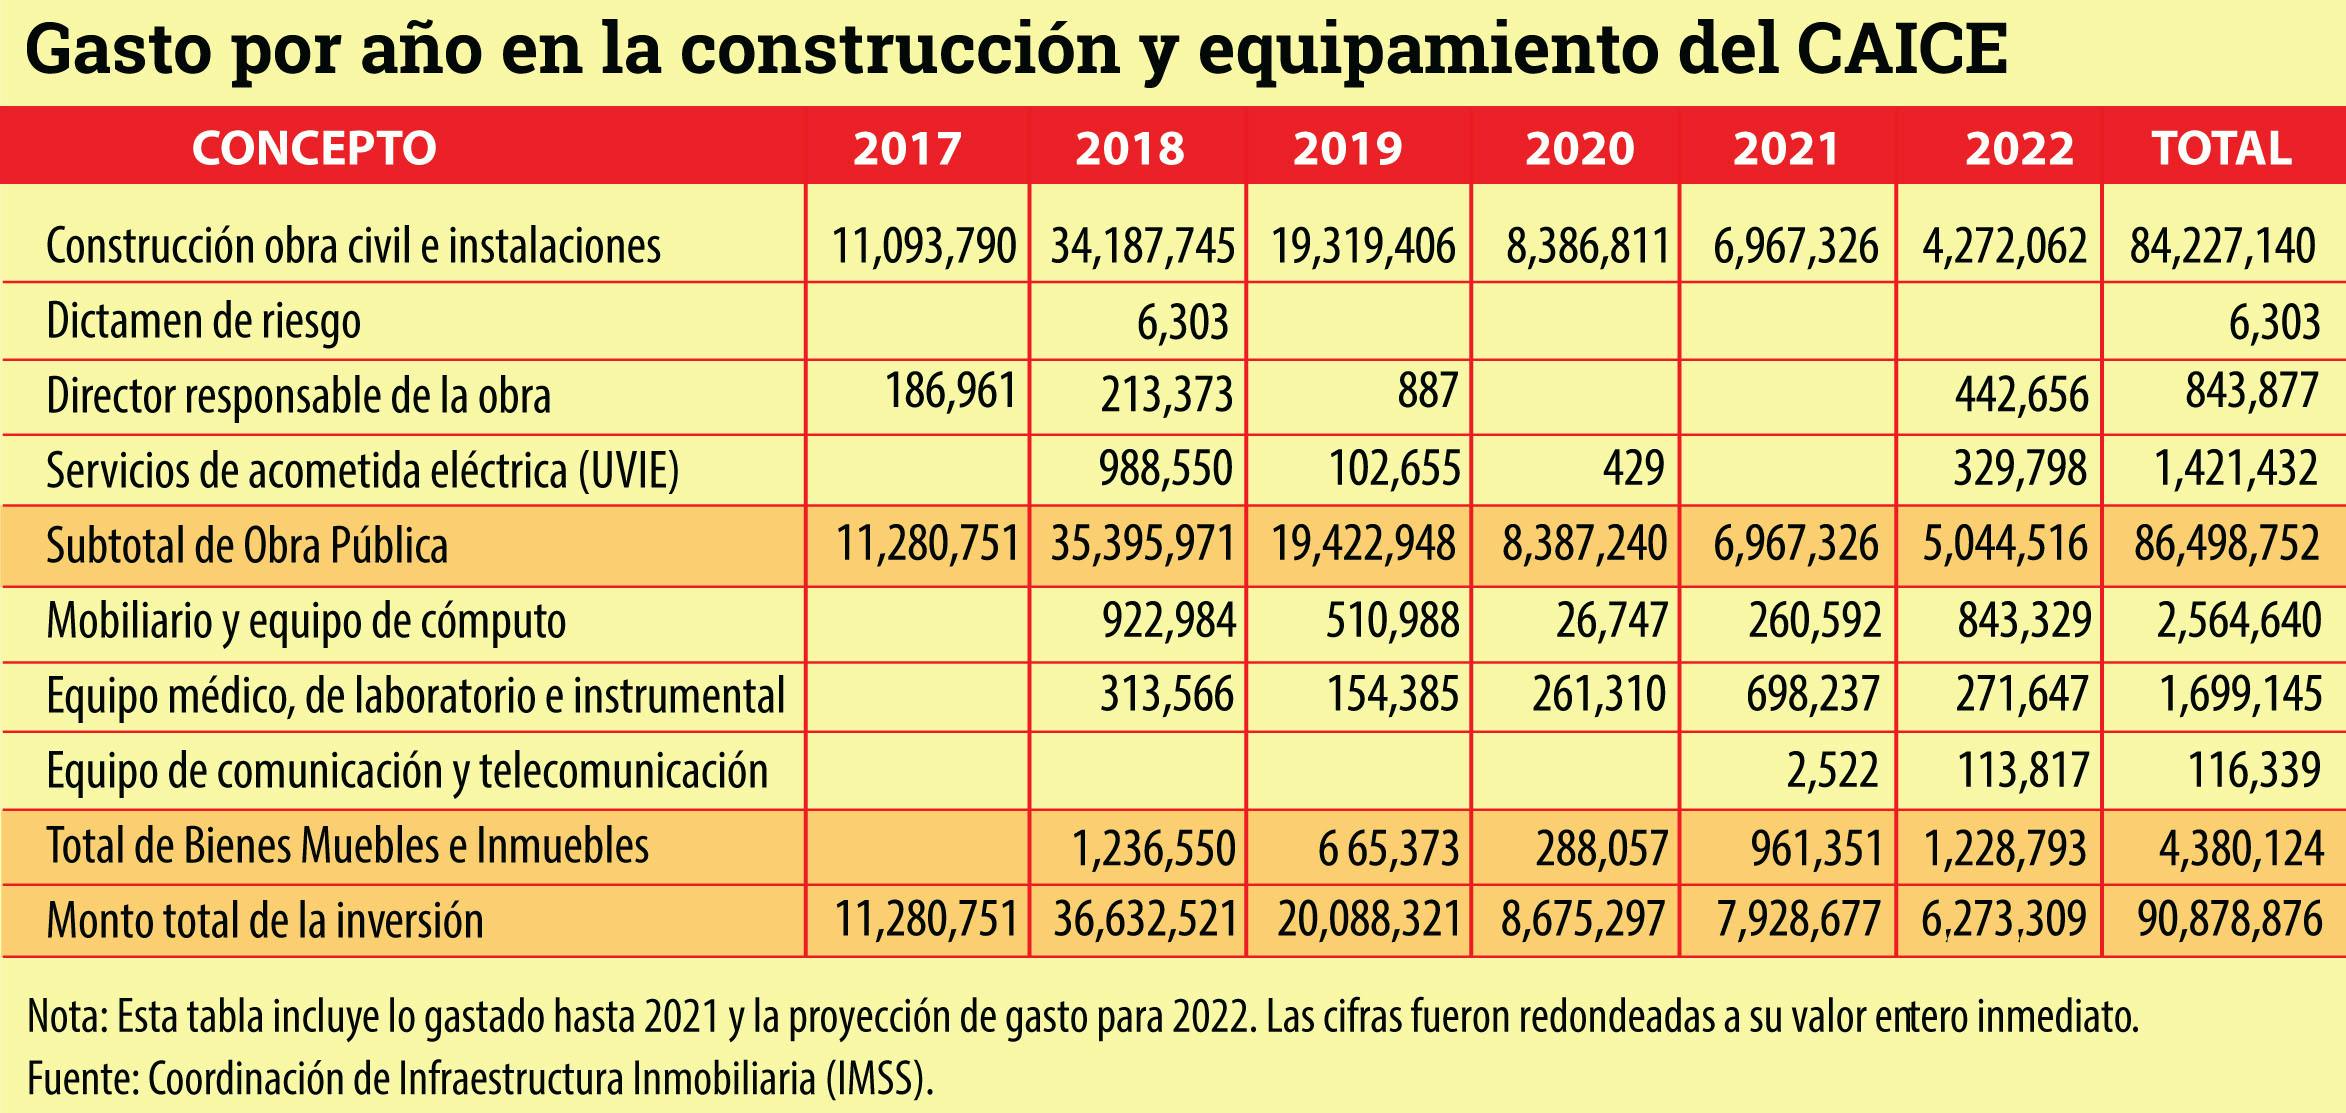 Tabla que muestra el gasto por año en la construcción y equipamiento del CAICE entre 2017 a 2022